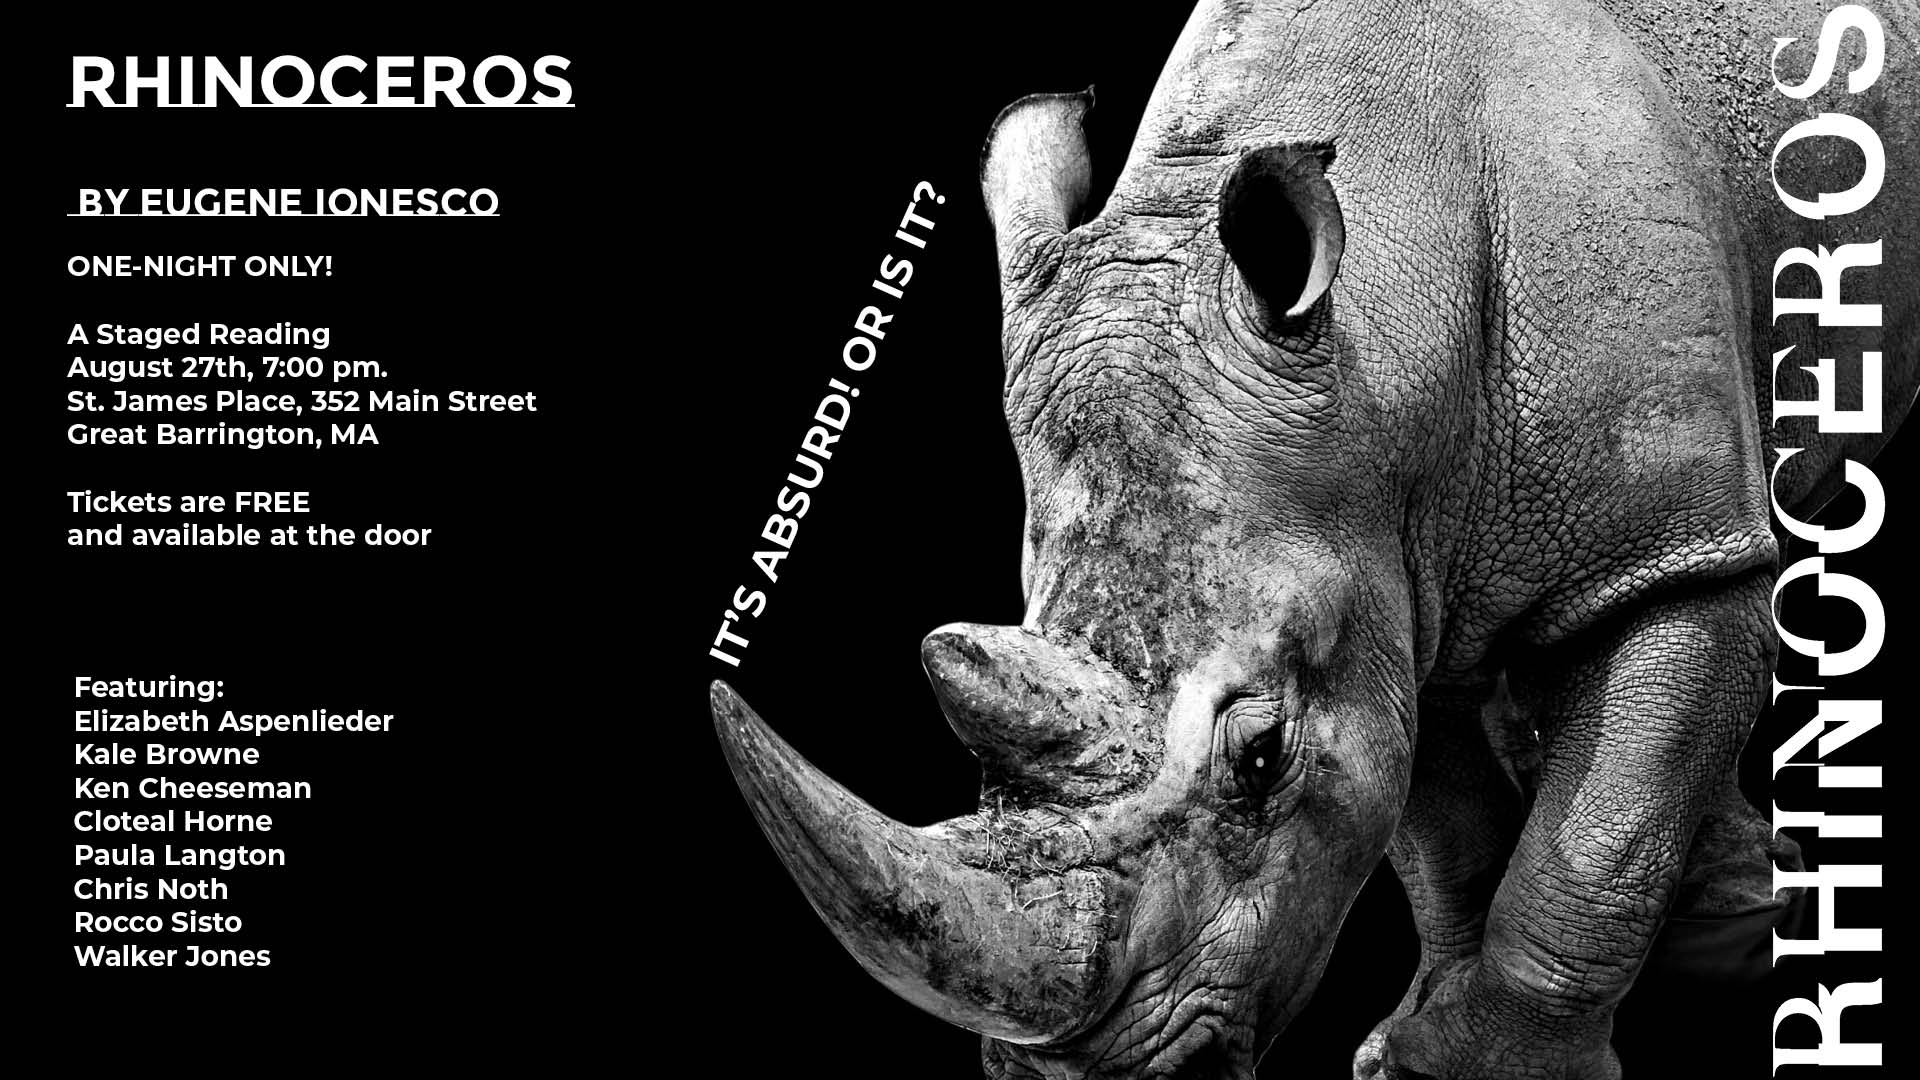 Rhinoceros by Eugene Ionesco